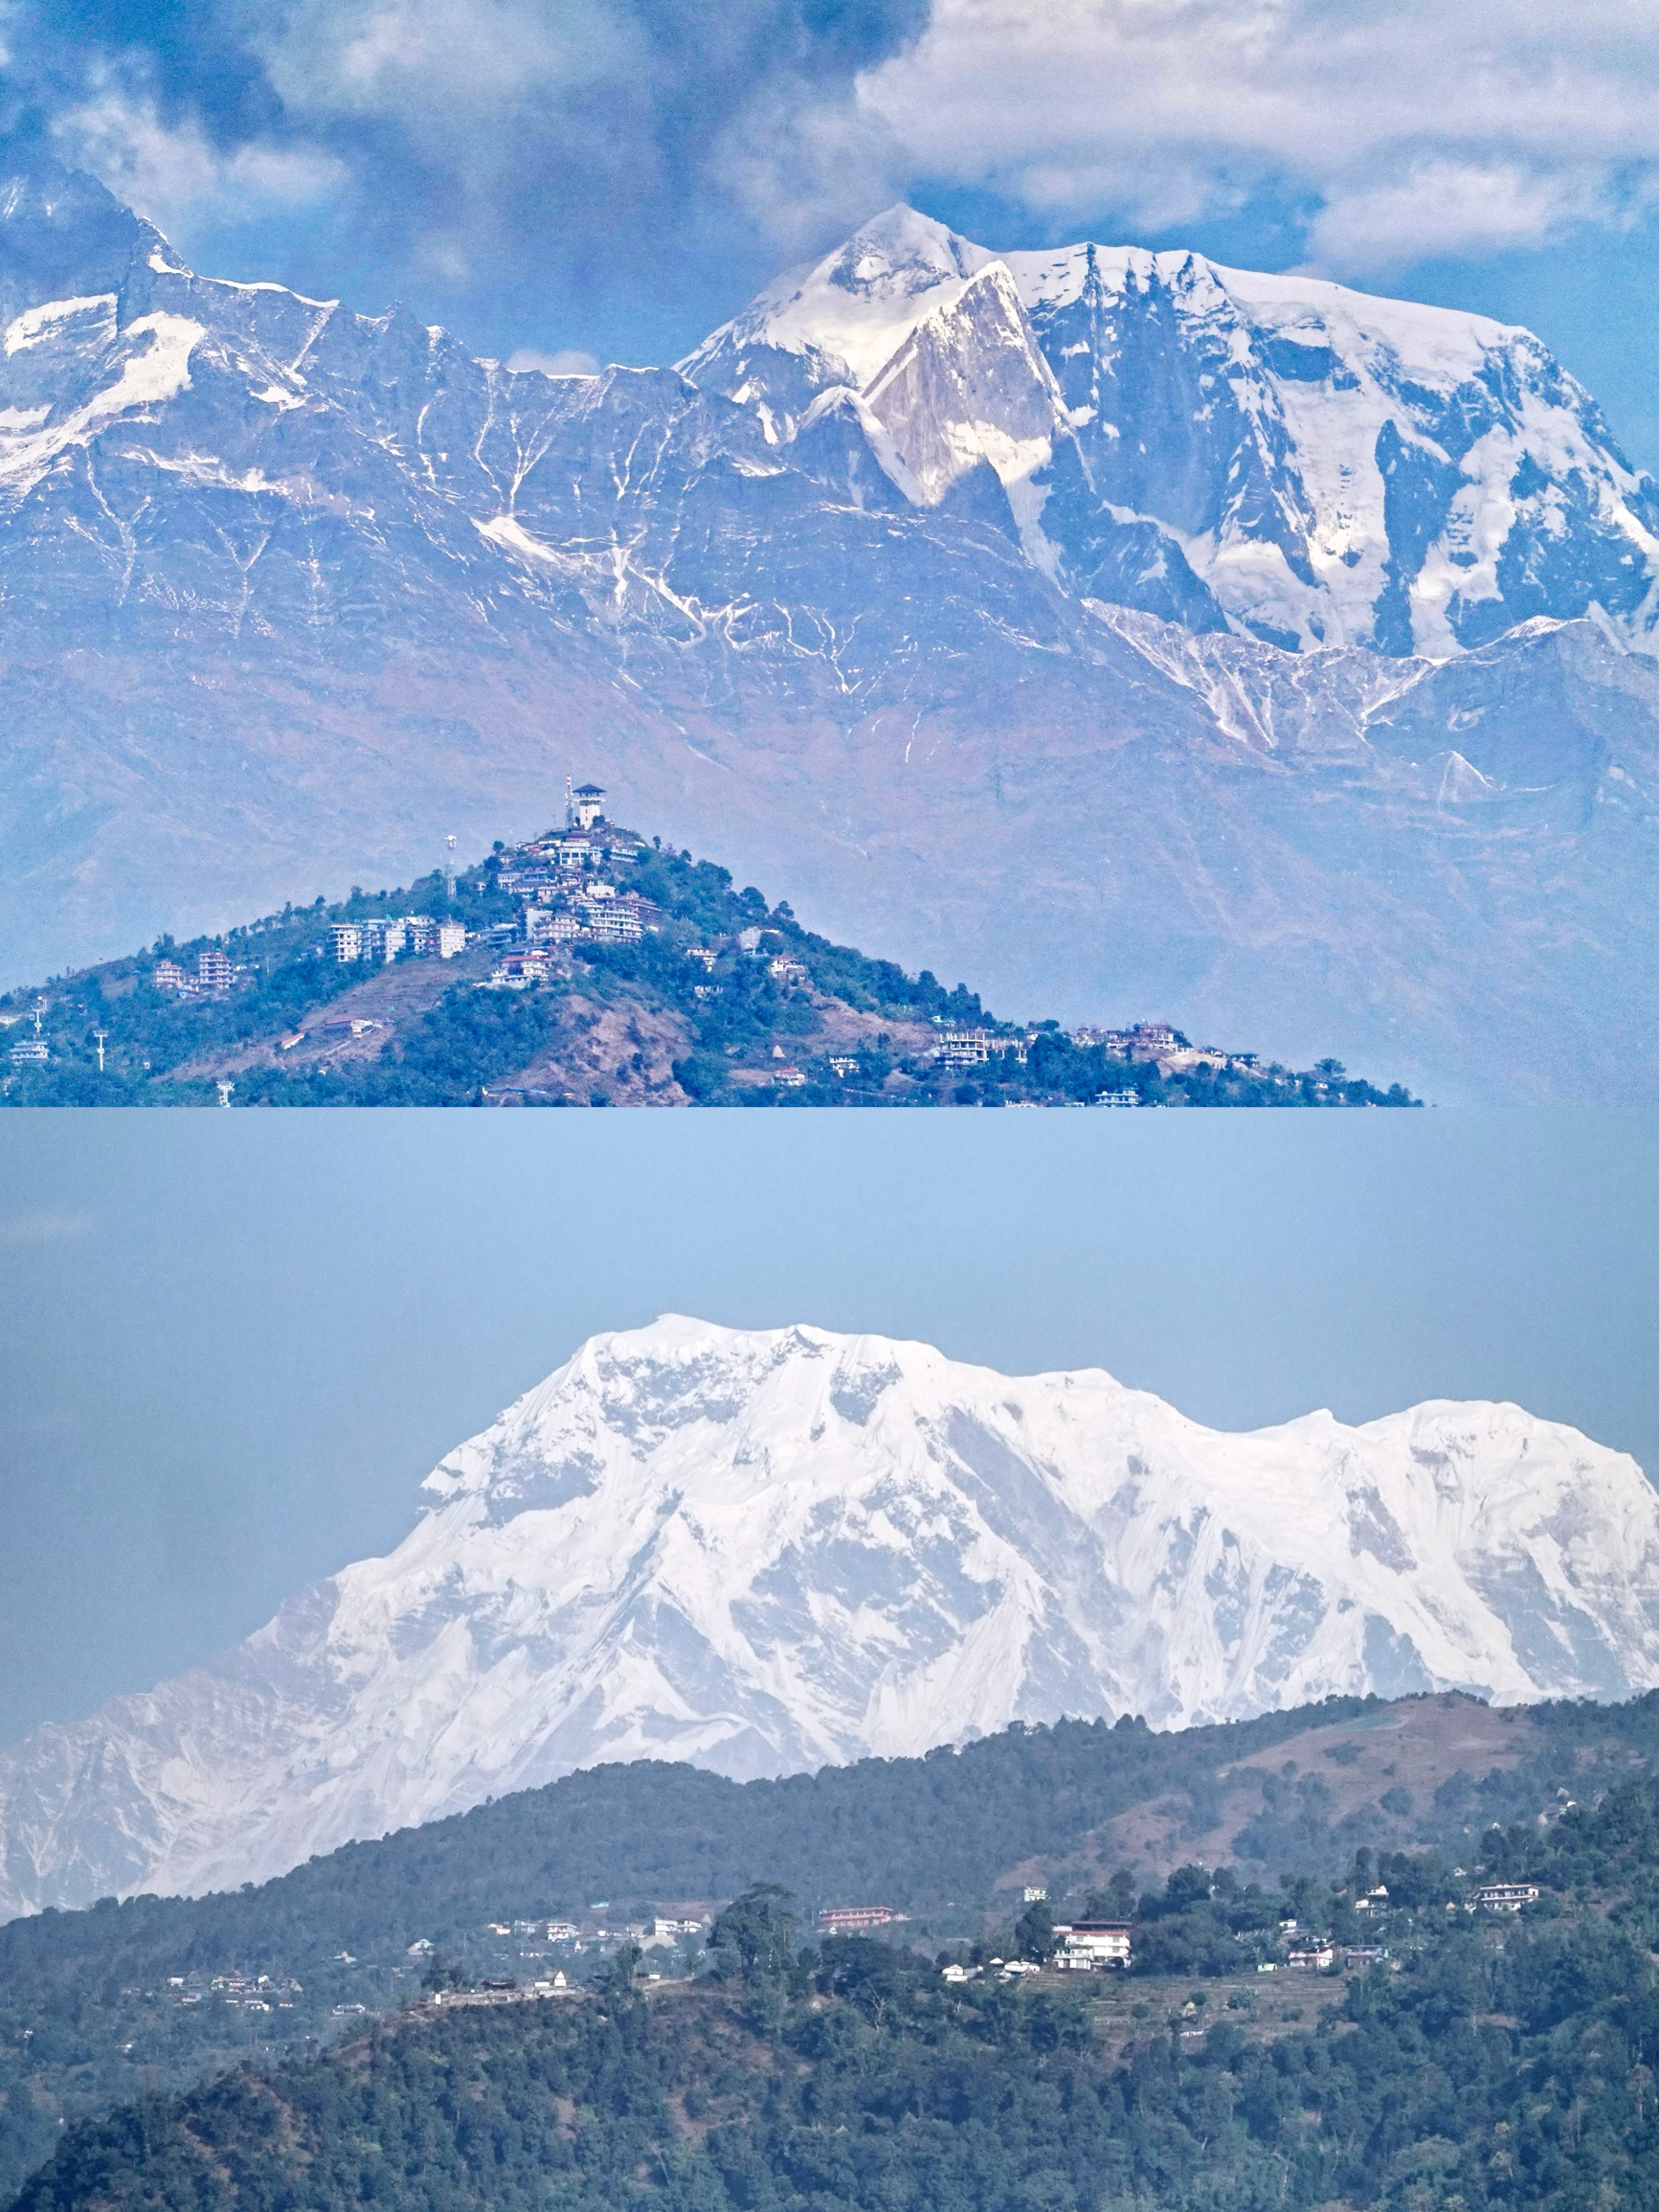 欣赏喜马拉雅雪山峰群，普通游客有三种上佳方法